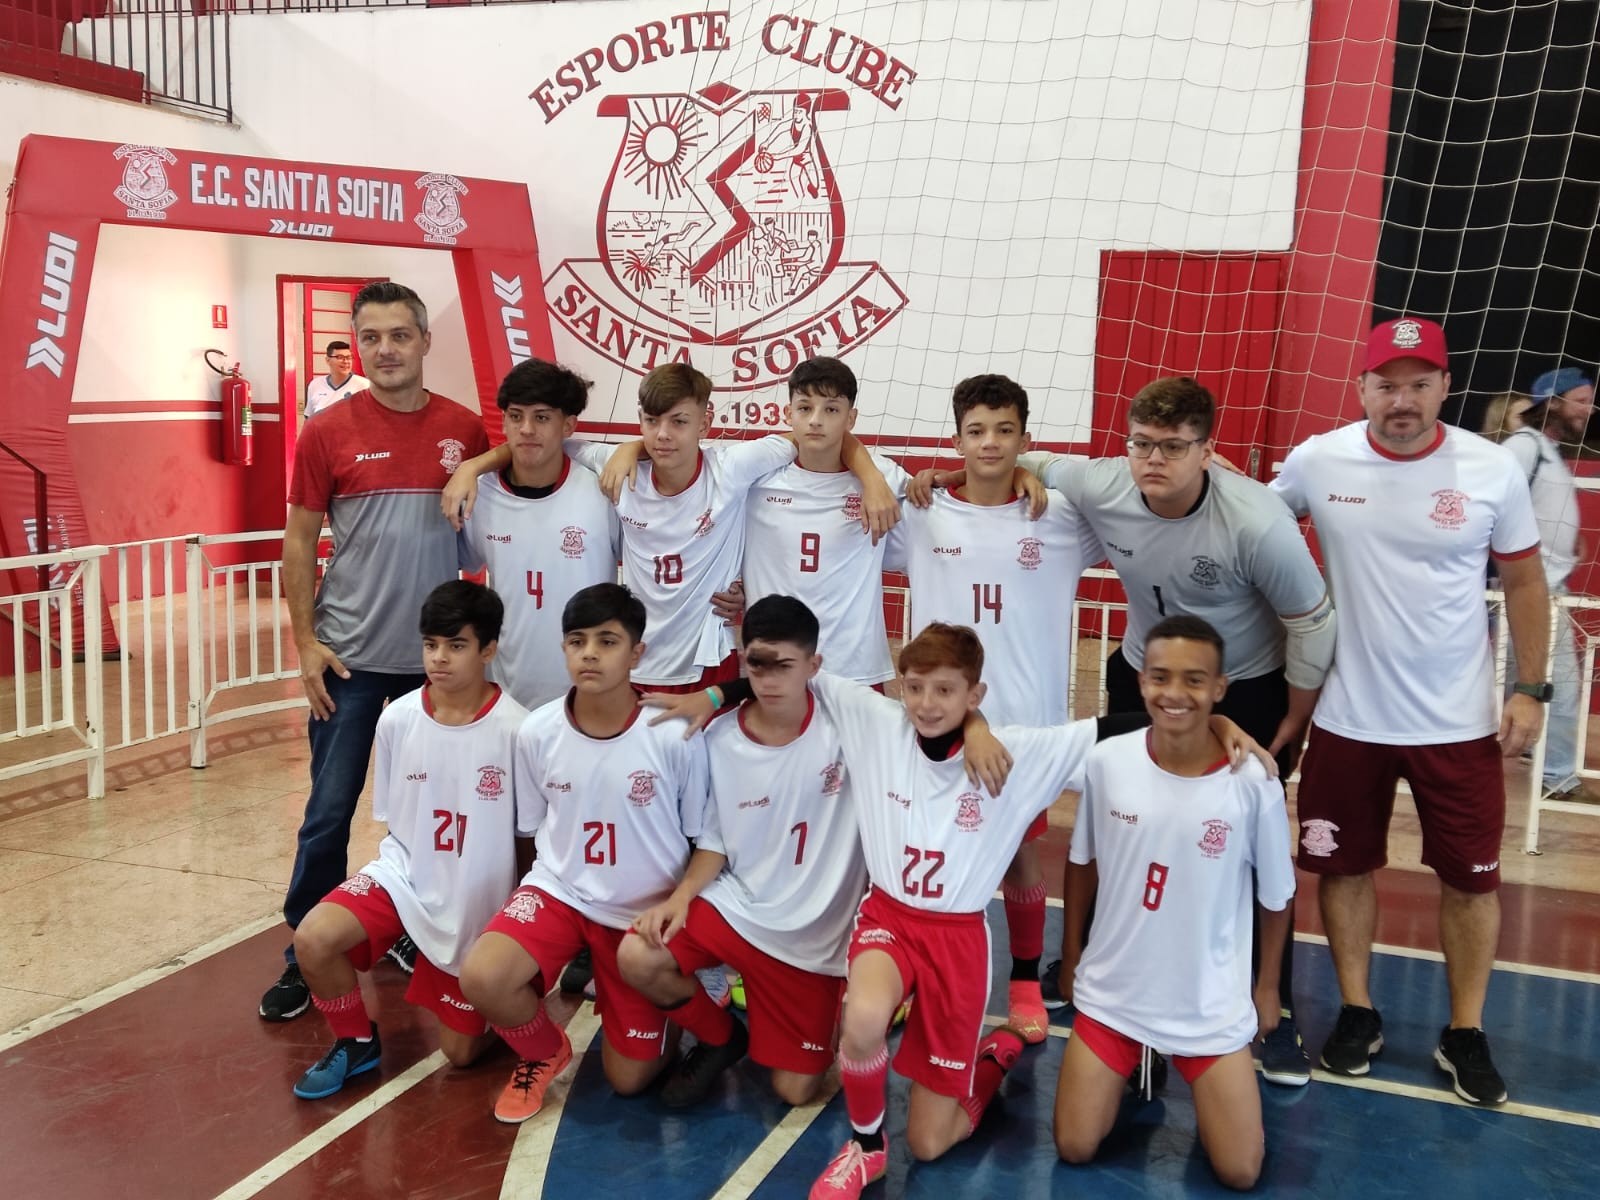 Campeonato Regional de Futsal de Menores 2023 conhece campeões e